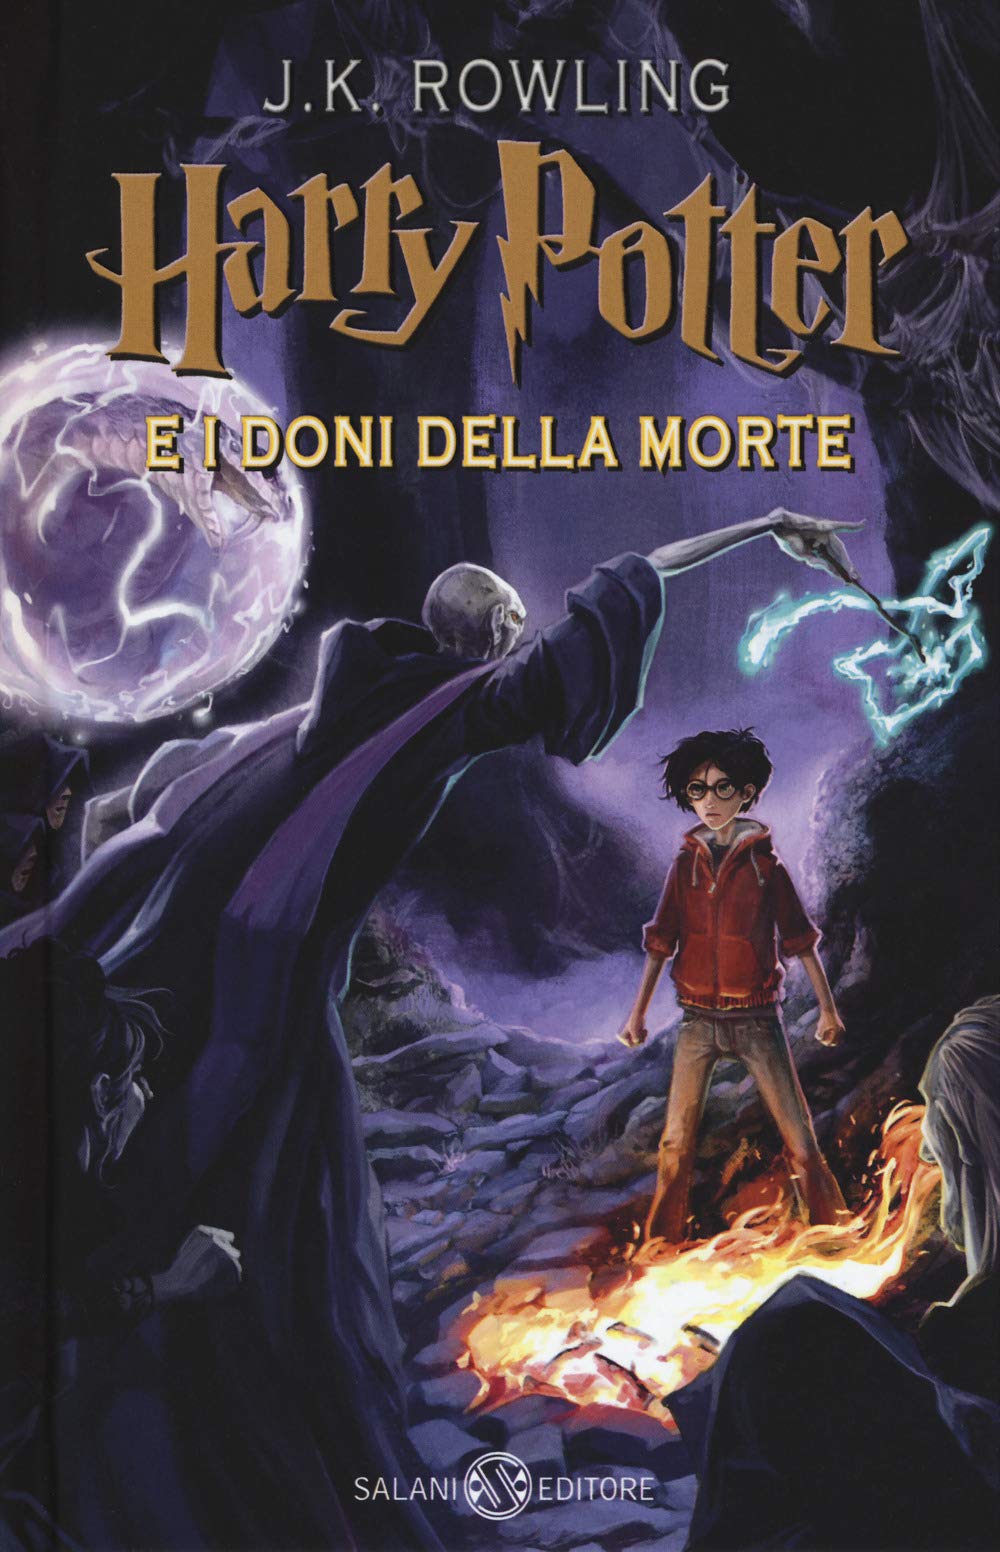 Harry Potter e i doni della morte, copertina